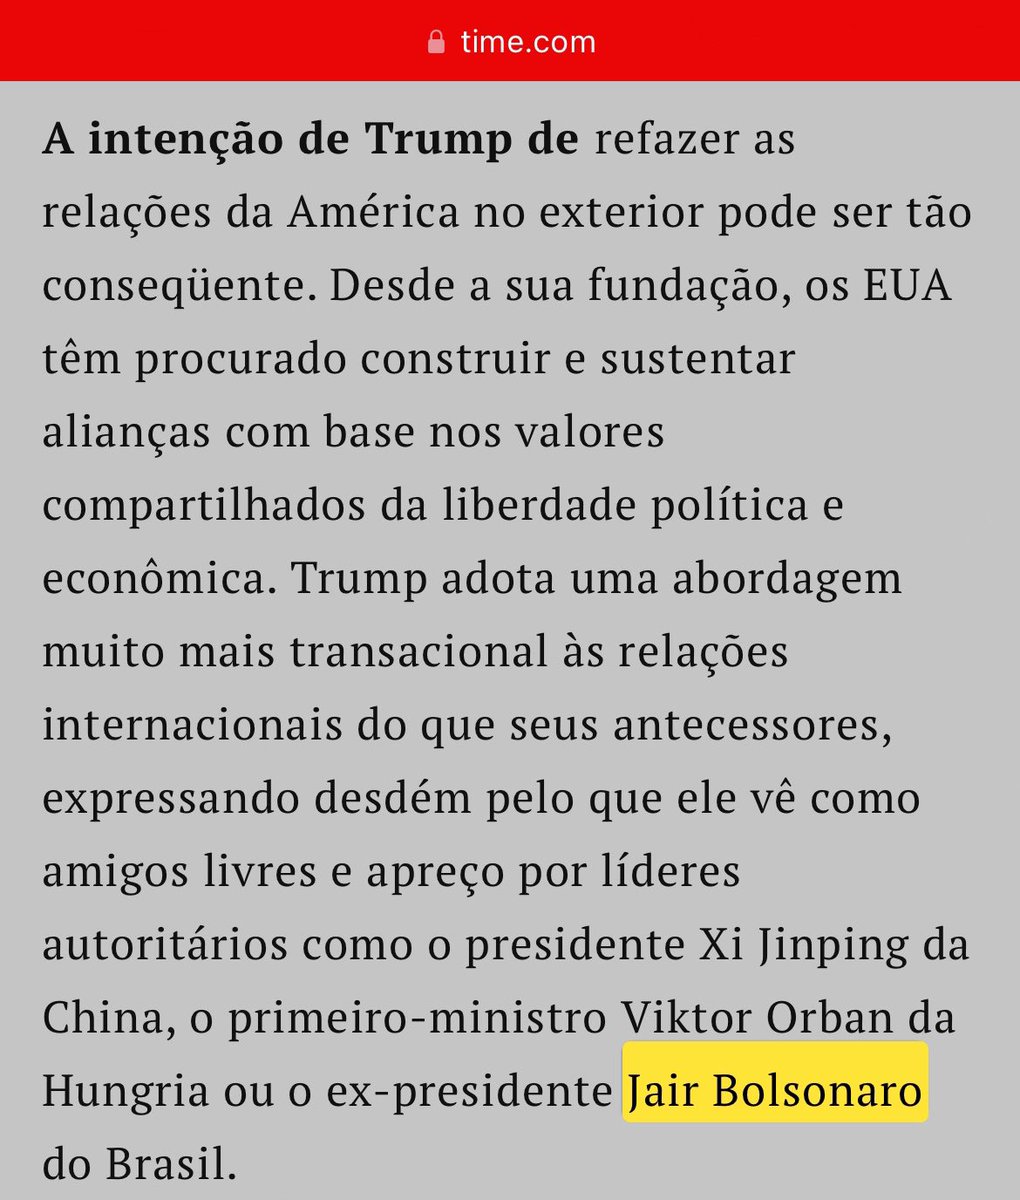 O Presidente @jairbolsonaro foi citado pela revista Time na entrevista do Presidente @realDonaldTrump publicada ontem como um dos “líderes autoritários” aos quais Donald Trump tem apreço…